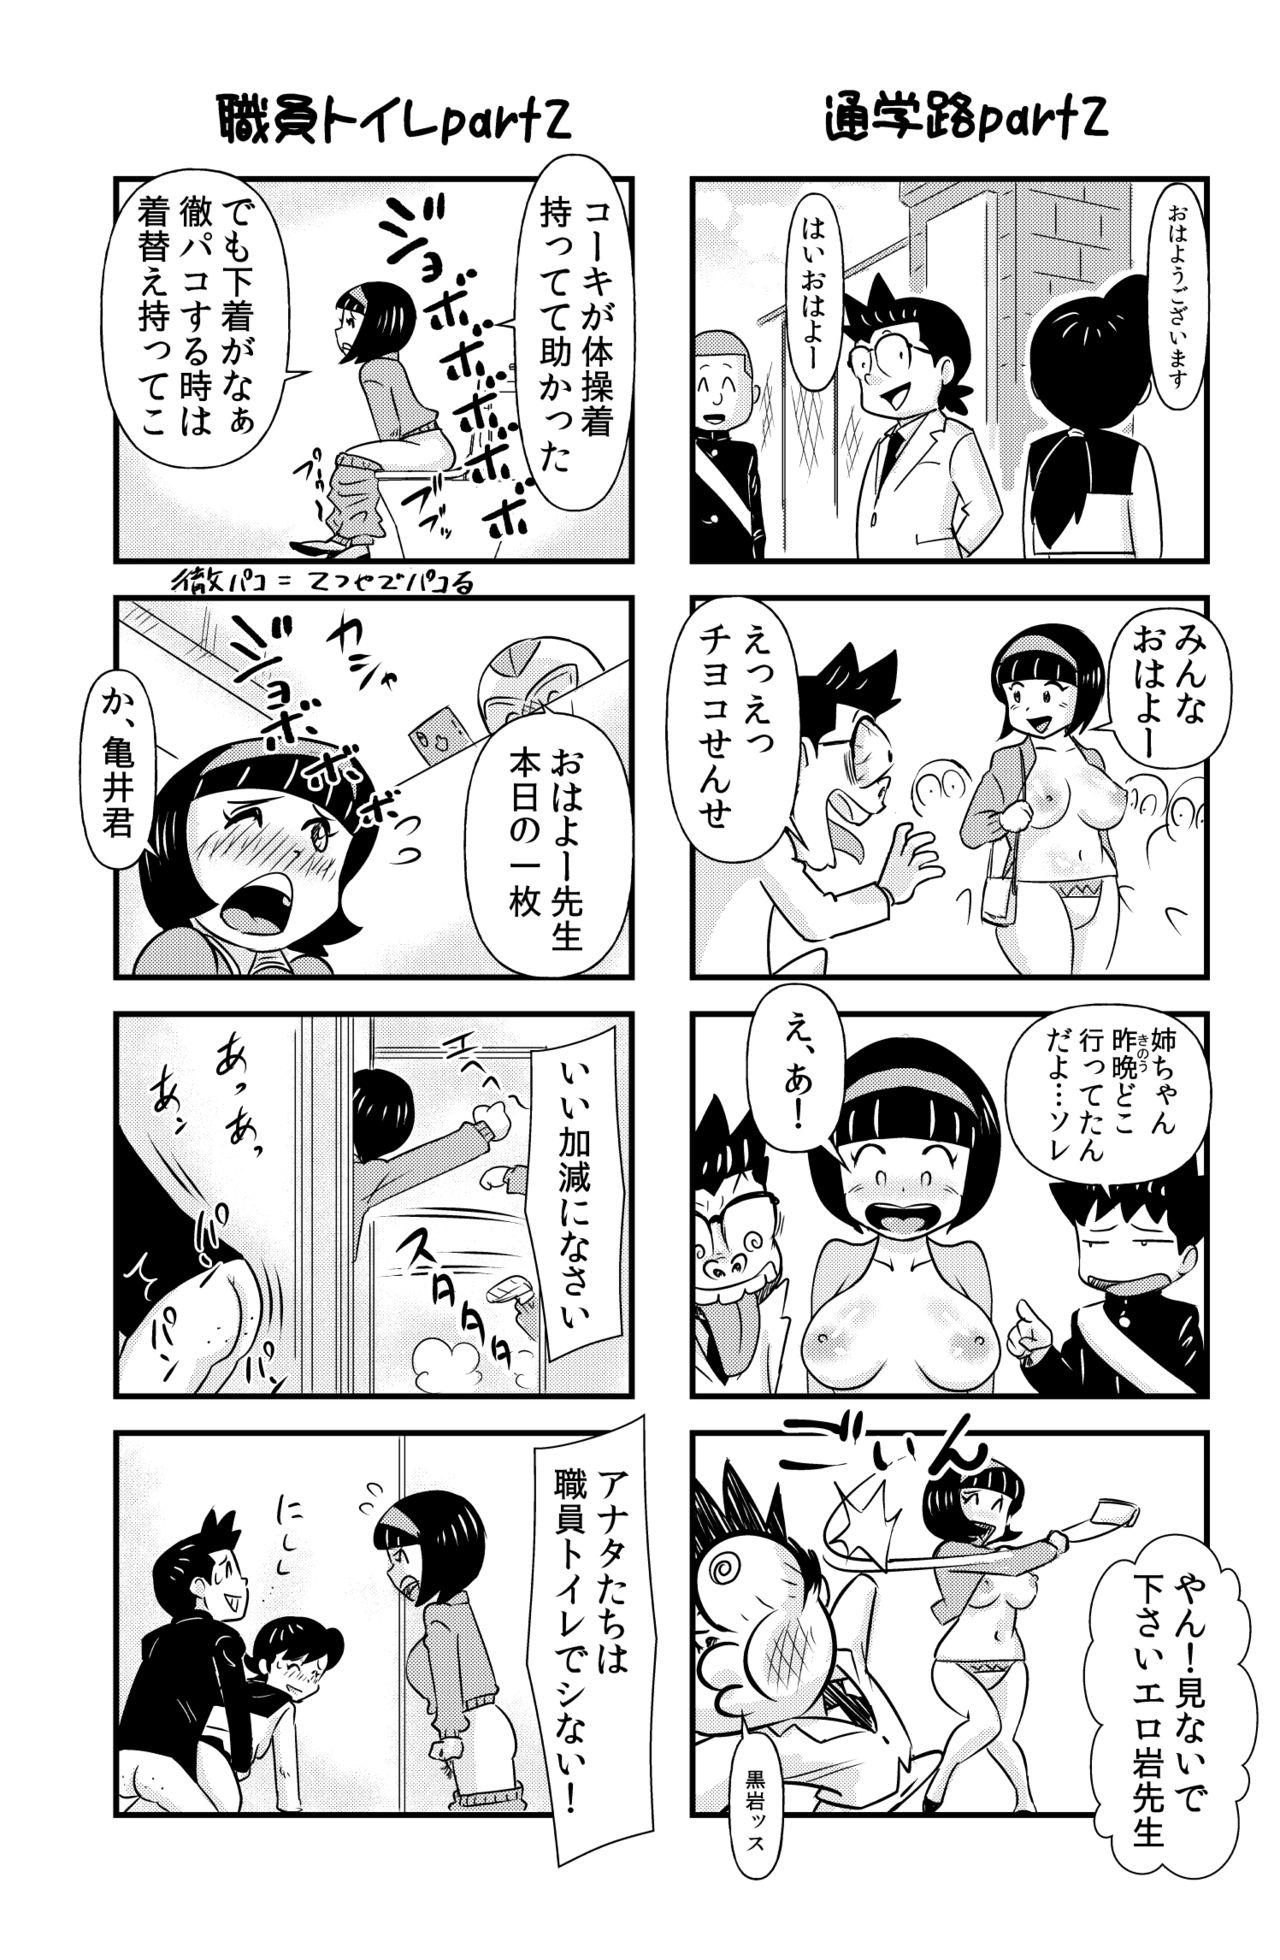 Weird おっちょこチヨコ先生 - Original Gay College - Page 7